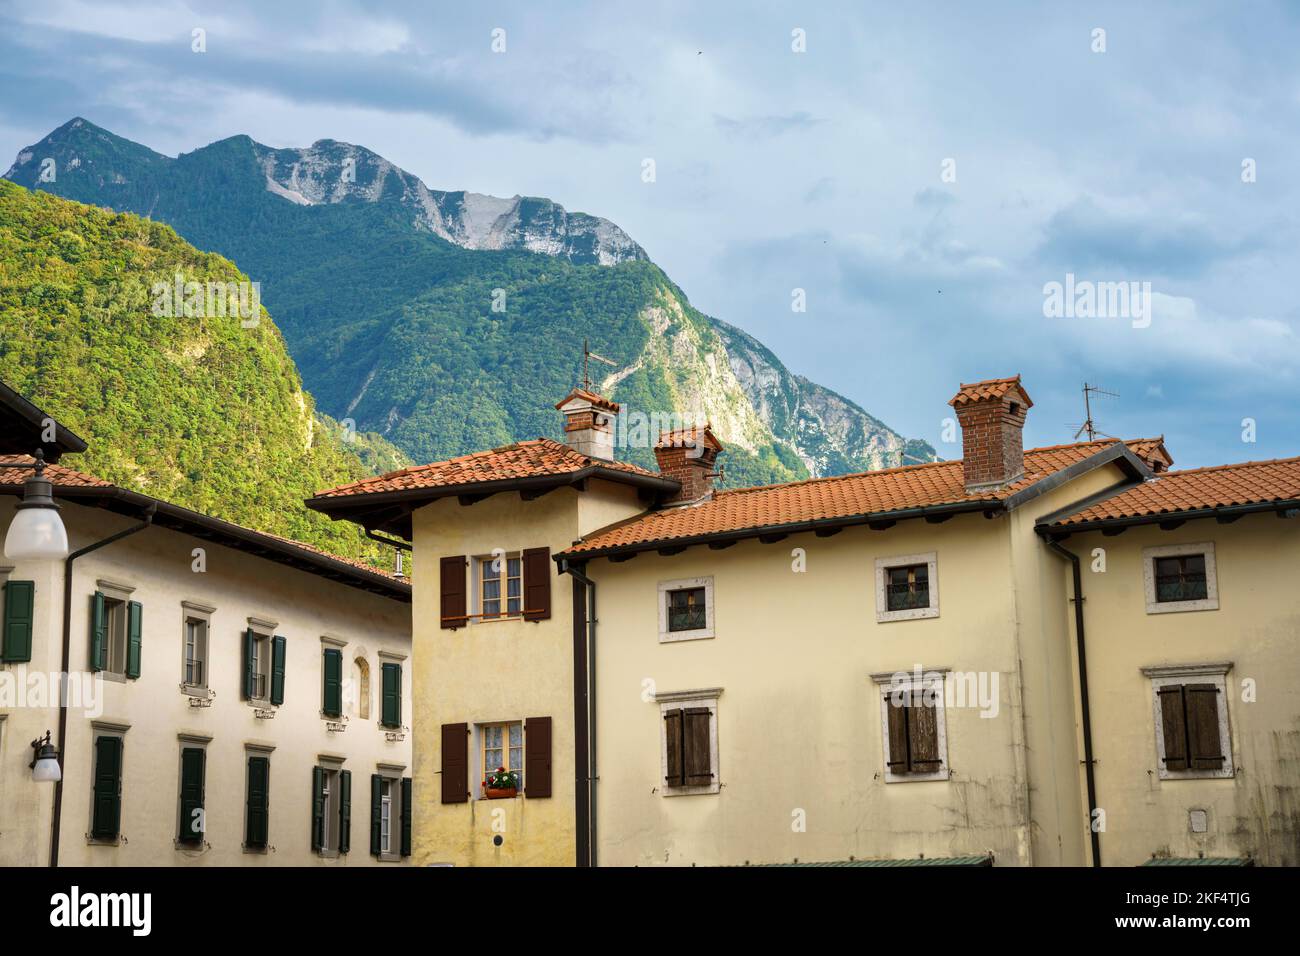 Extérieur des bâtiments historiques de Venzone, province d'Udine, Friuli-Venezia Giulia, Italie Banque D'Images